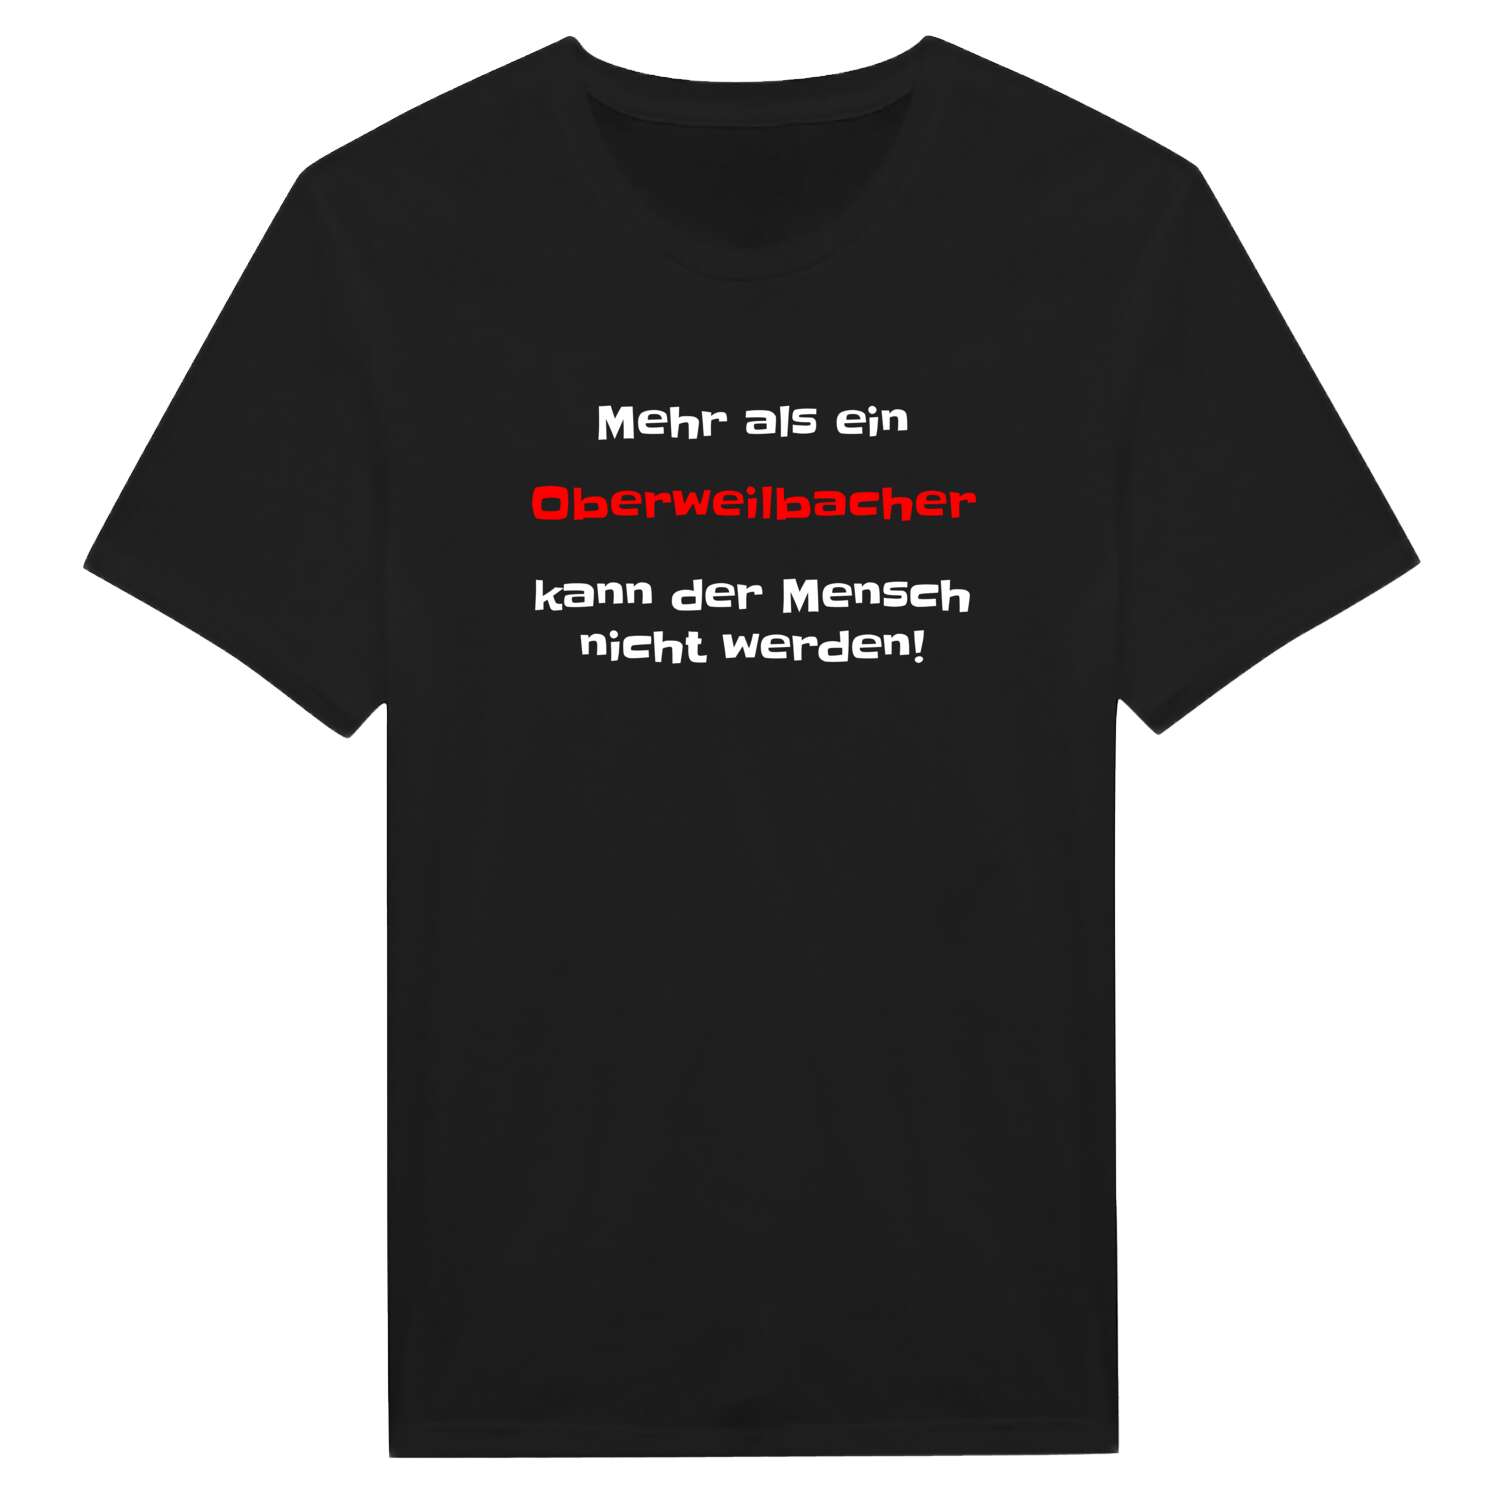 Oberweilbach T-Shirt »Mehr als ein«